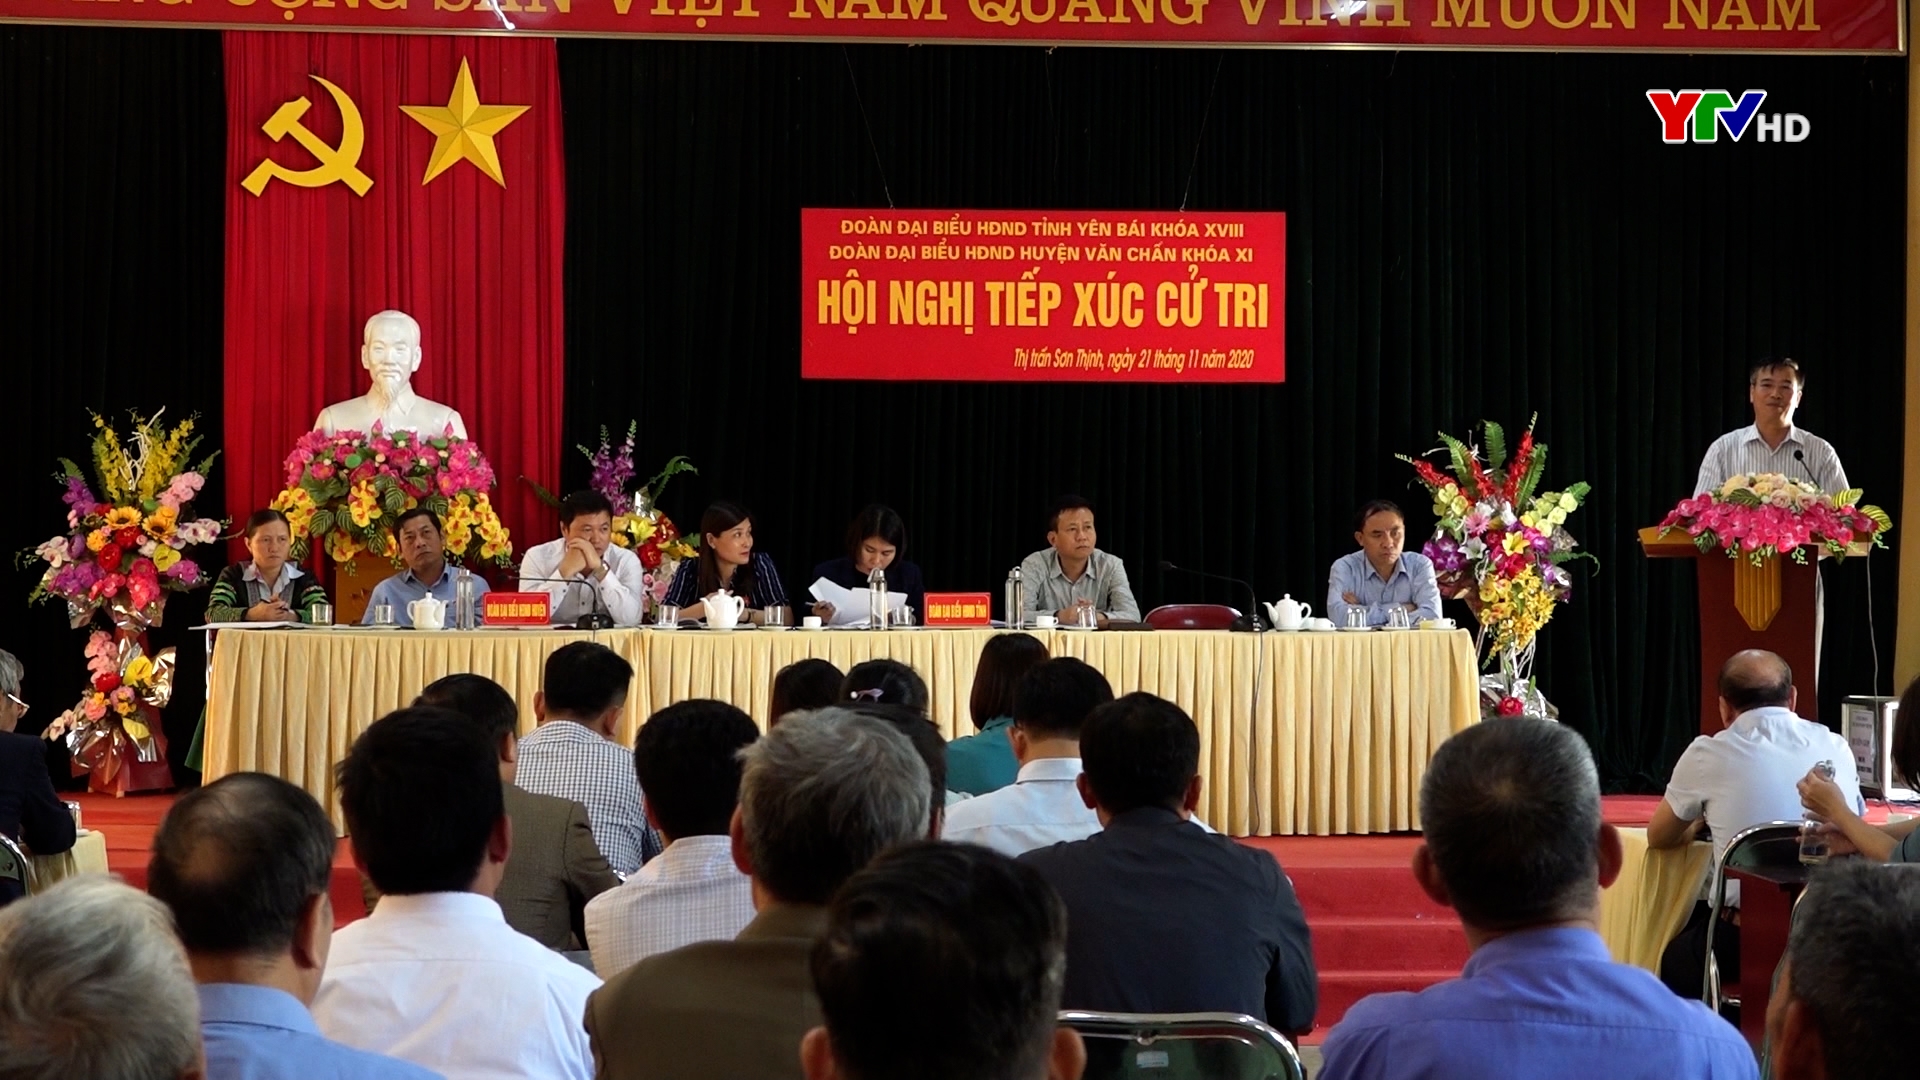 Tổ Đại biểu HĐND tỉnh Yên Bái khóa XVIII tiếp xúc cử tri huyện Văn Chấn